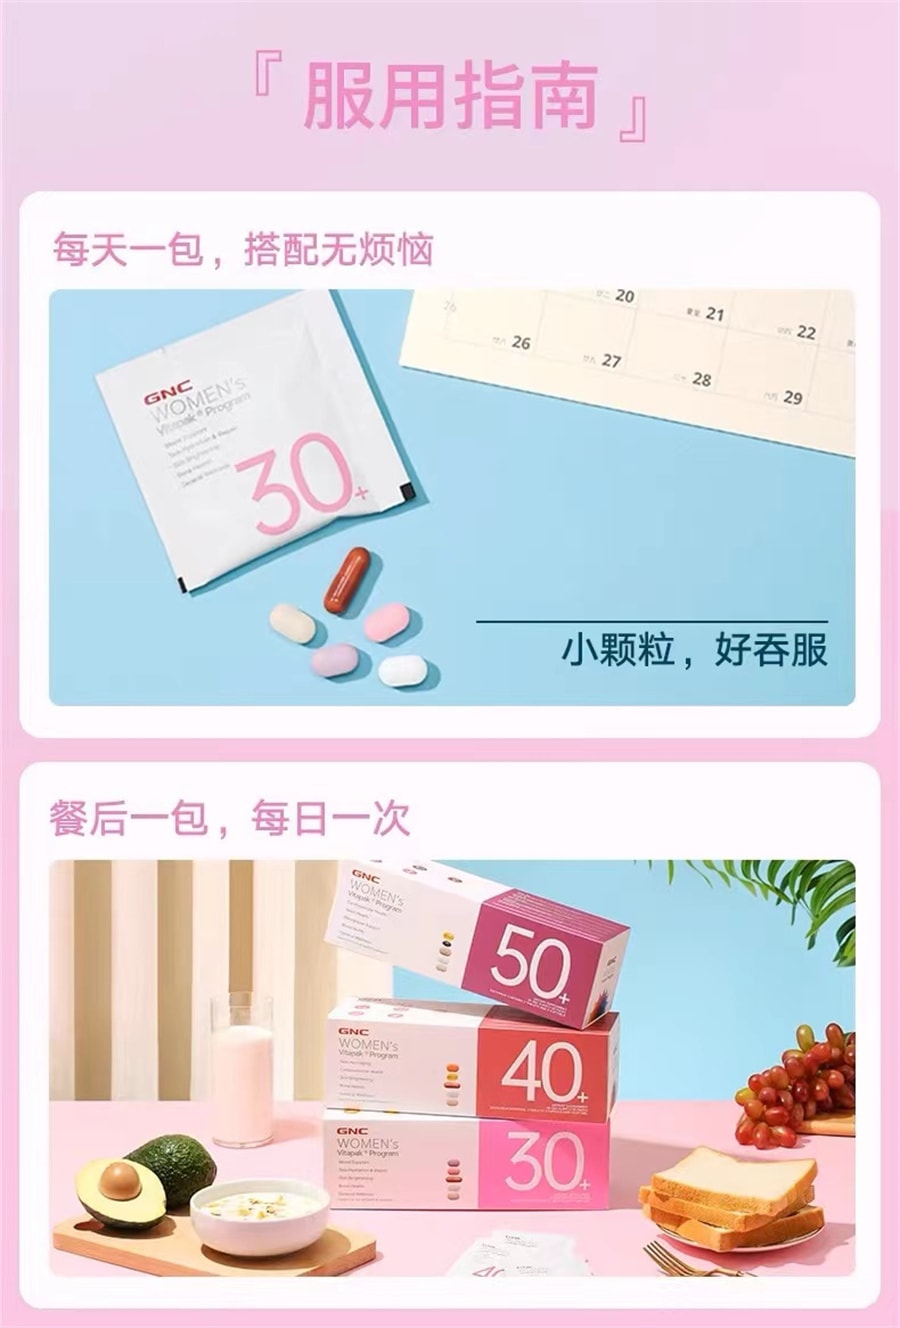 【中国直邮】gnc健安喜  30-50岁时光包女性每日营养包复合维生素男士综合保健品  女性30+